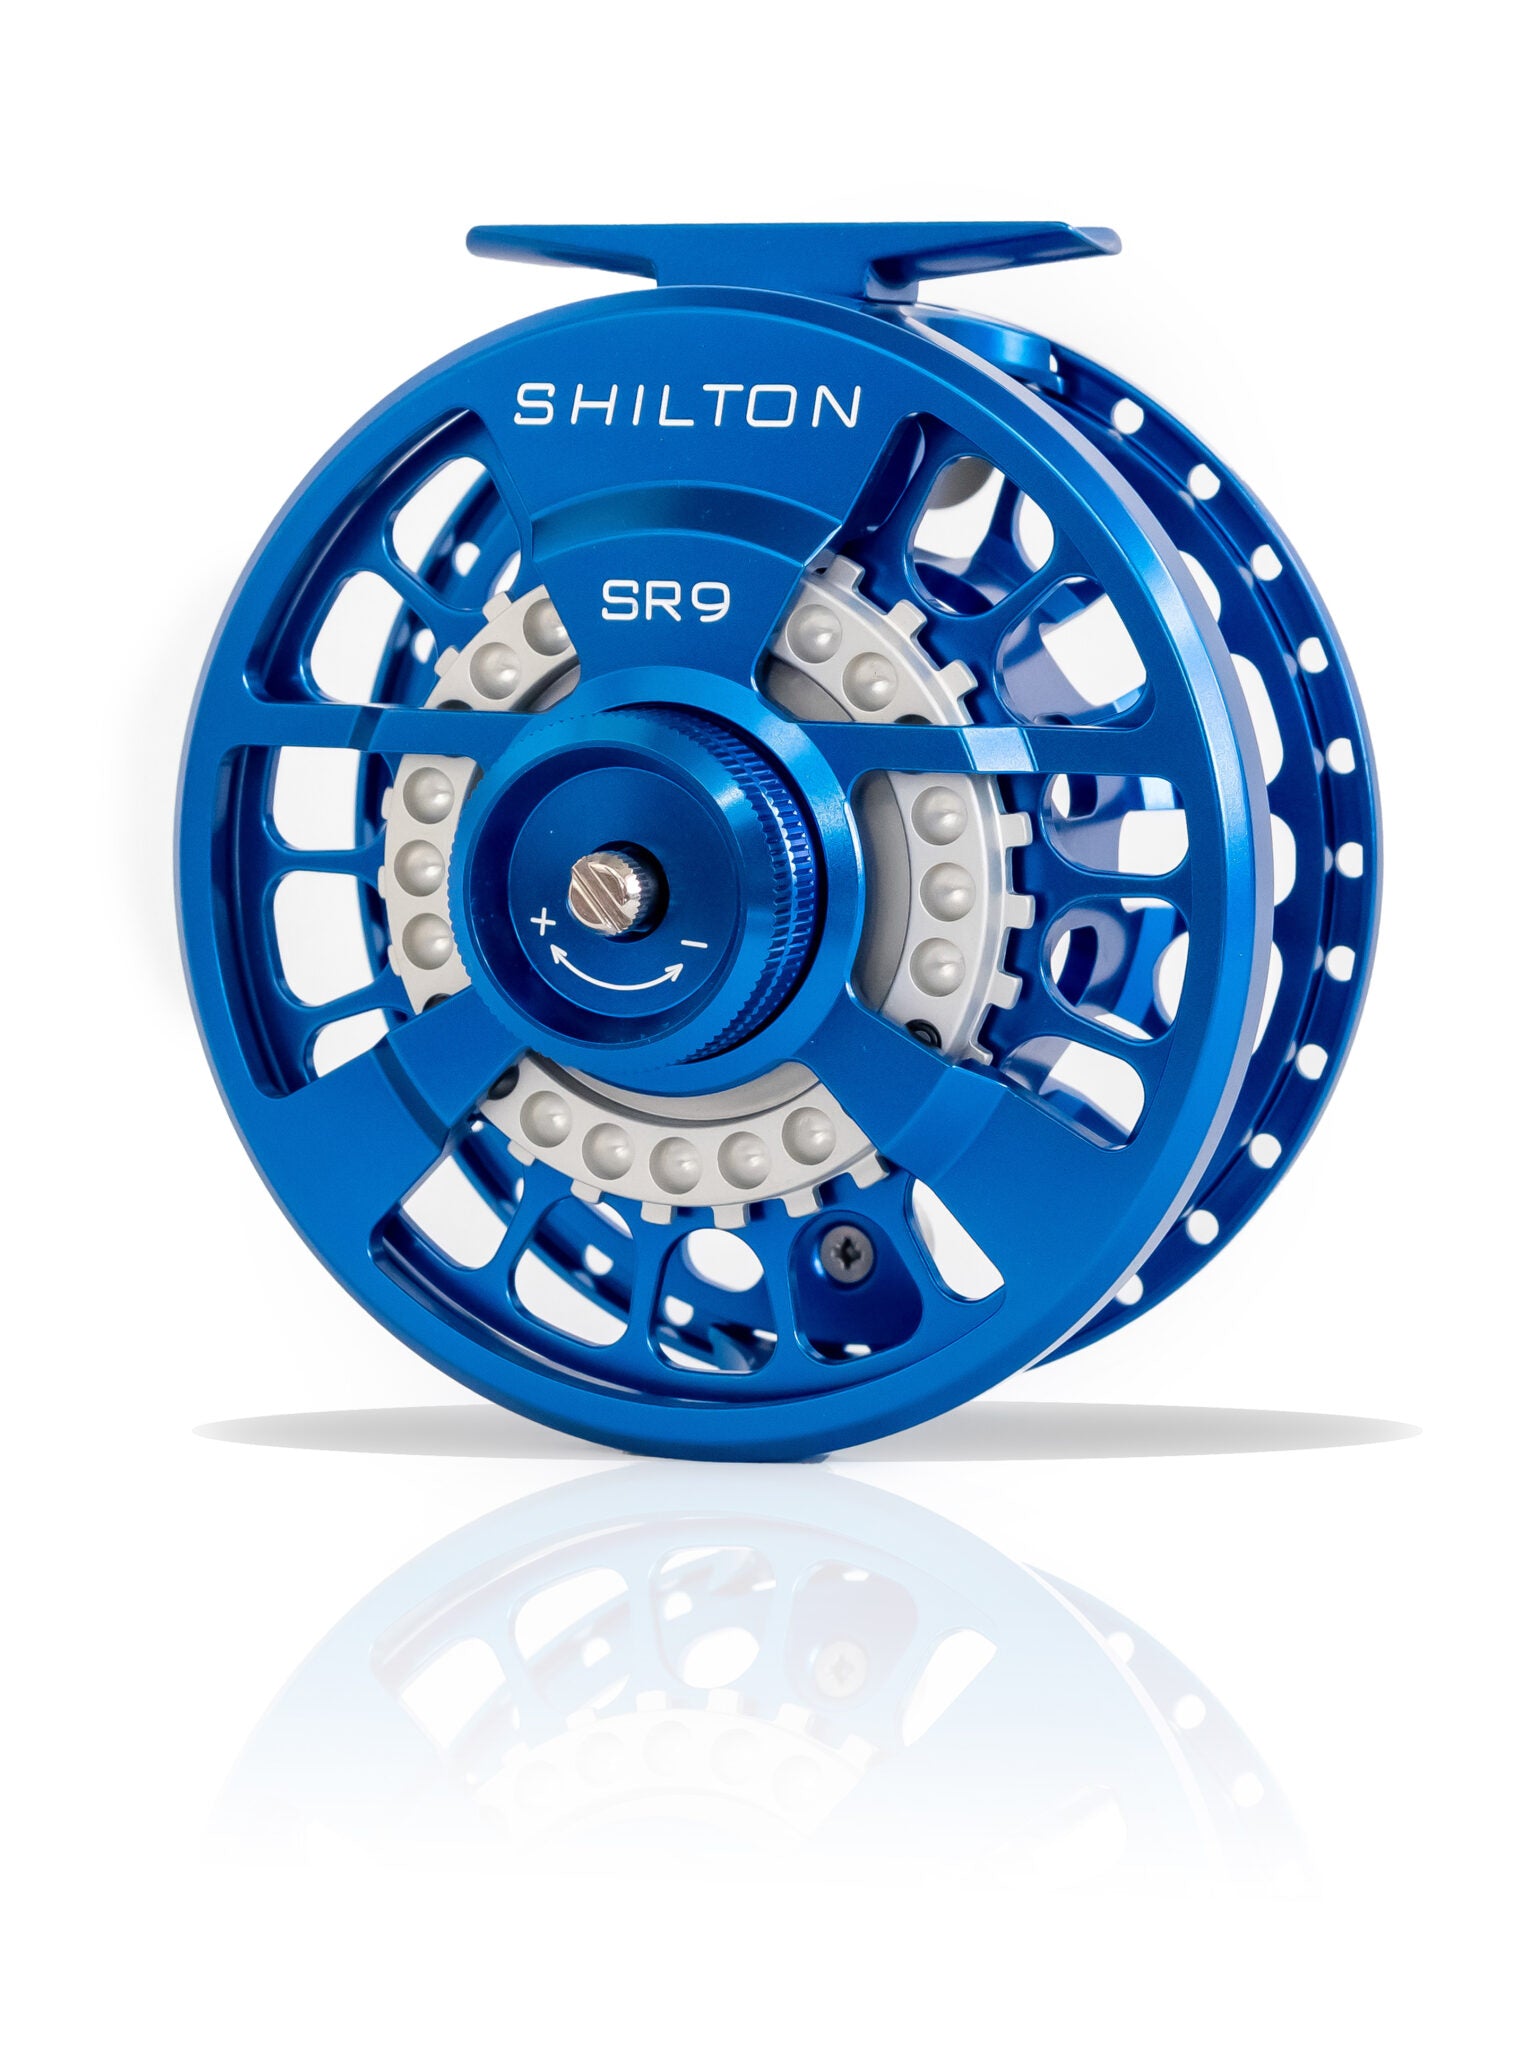 Shilton SR9 Reels (8-9wt) in Blue